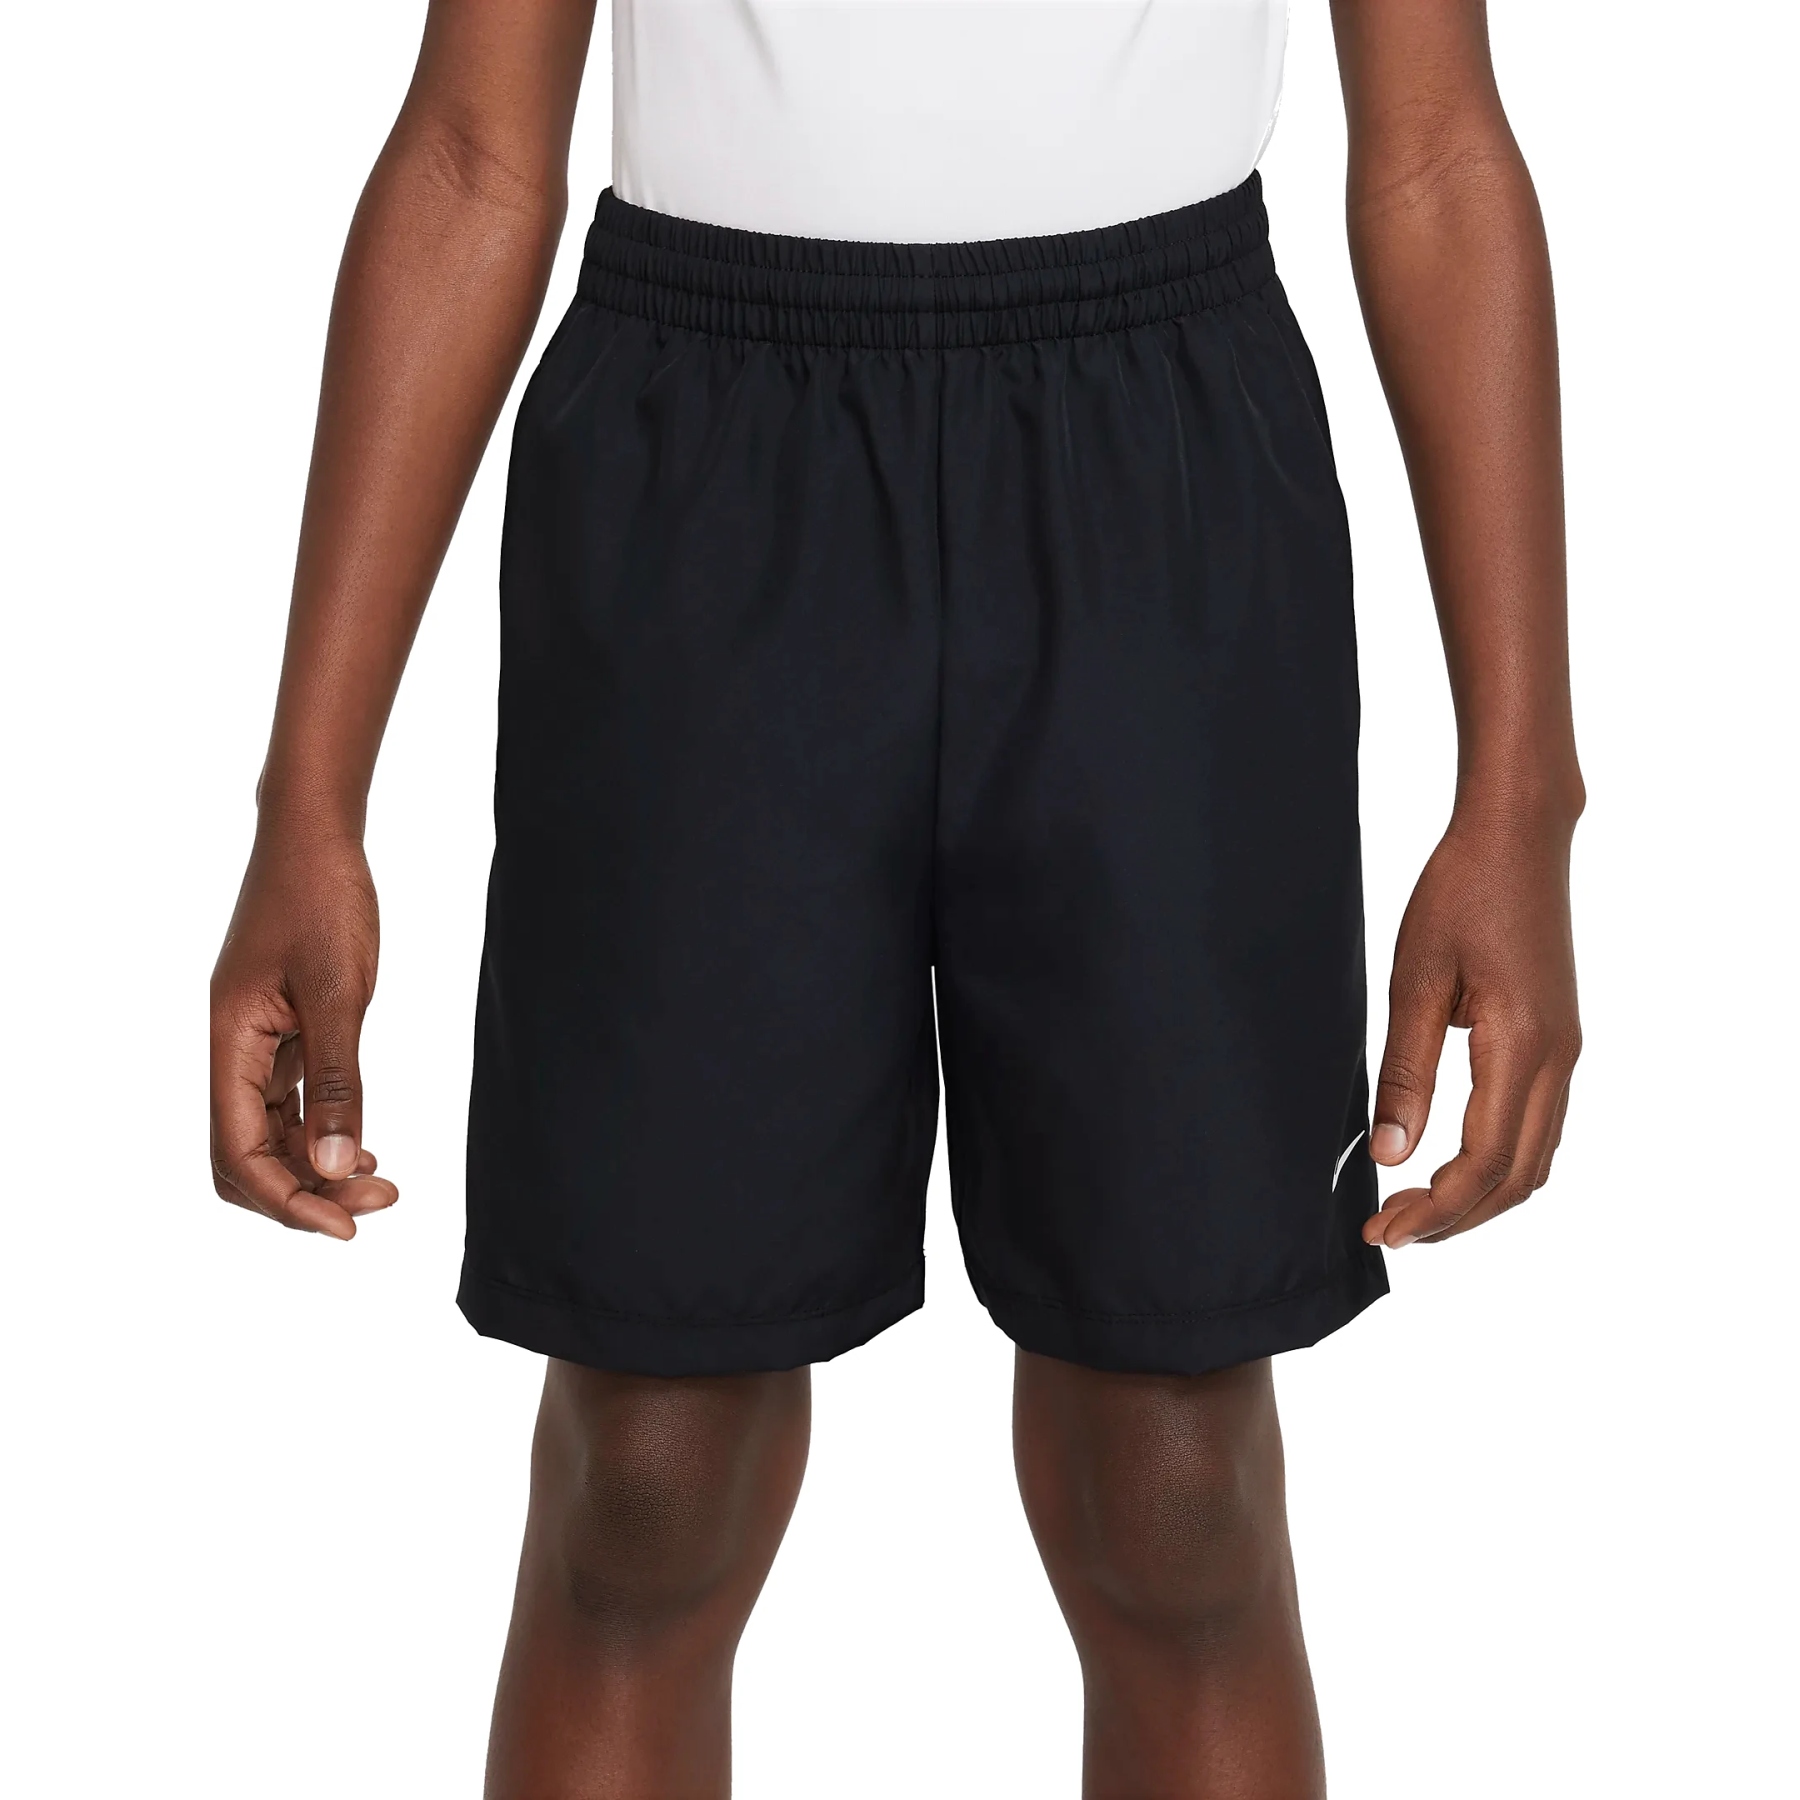 Produktbild von Nike Multi Dri-FIT Trainingsshorts für ältere Kinder - schwarz/weiß DX5382-010